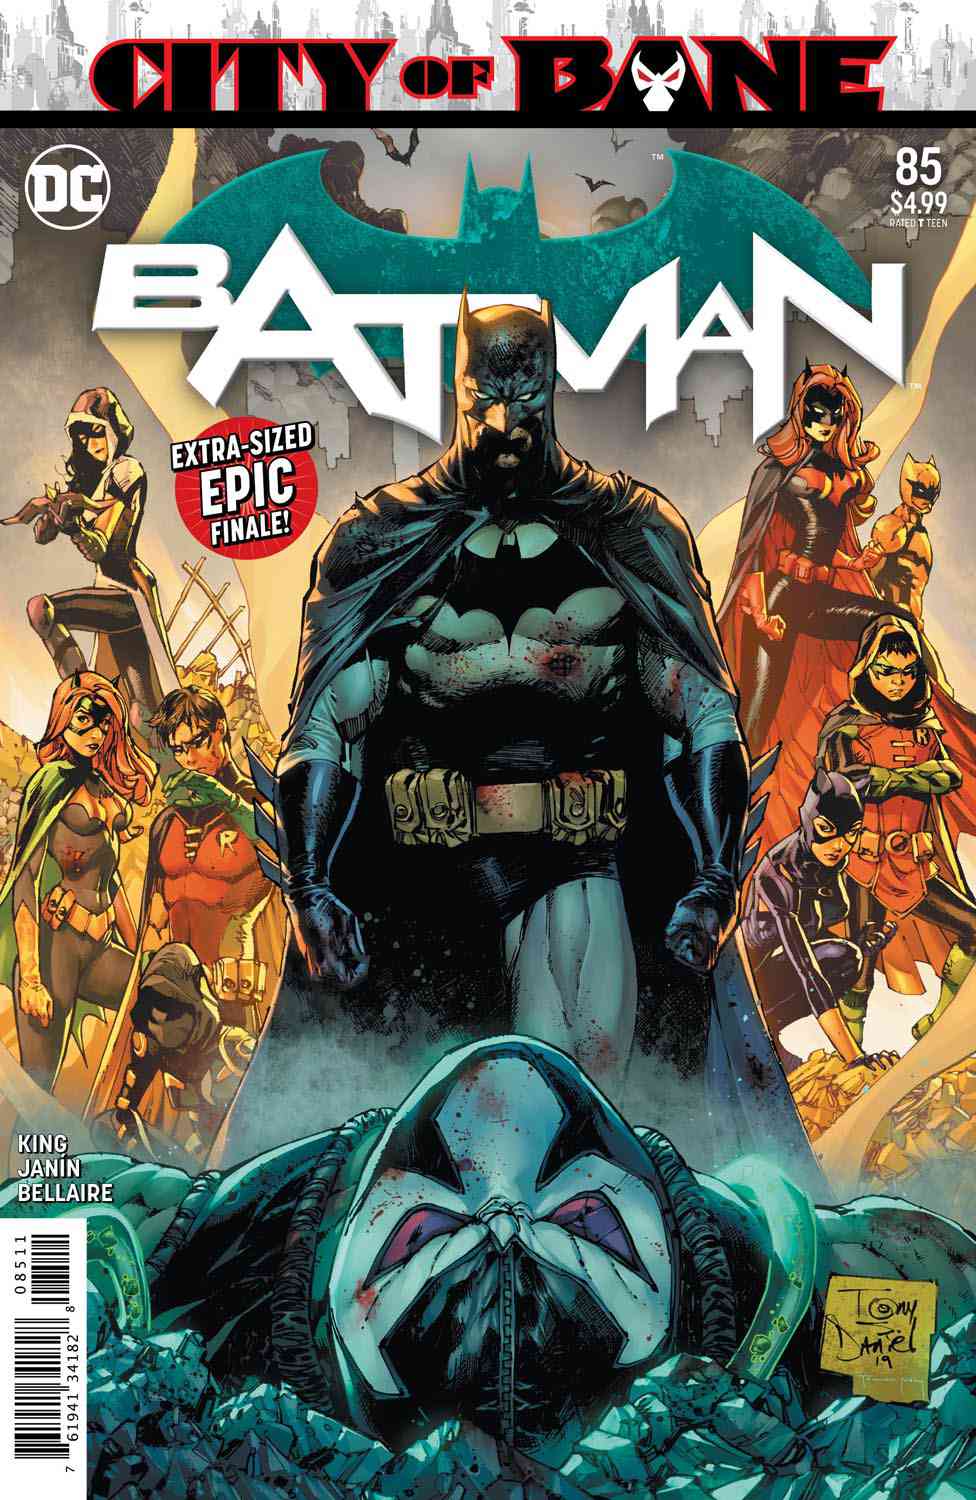 Tom King breaks down his Batman comic finale 